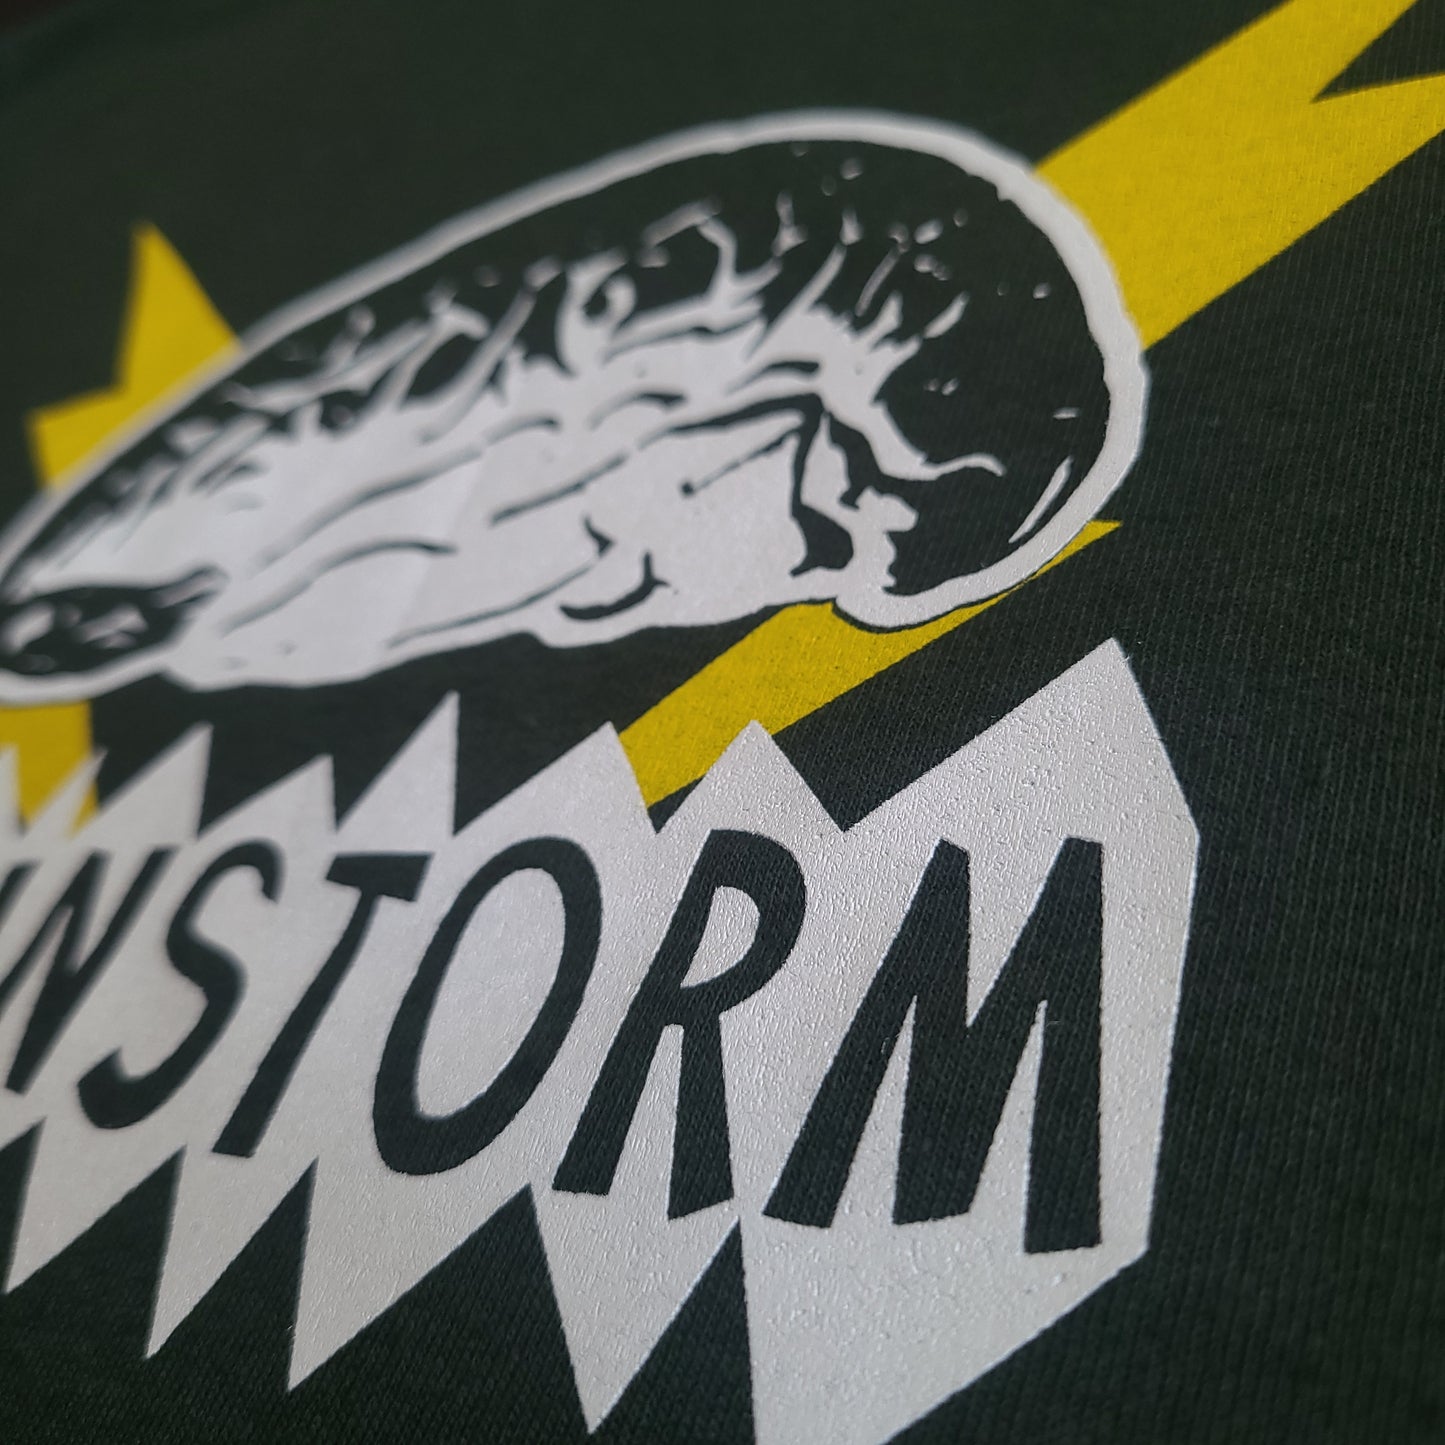 Brainstorm - Forest Storm Unisex T-Shirt